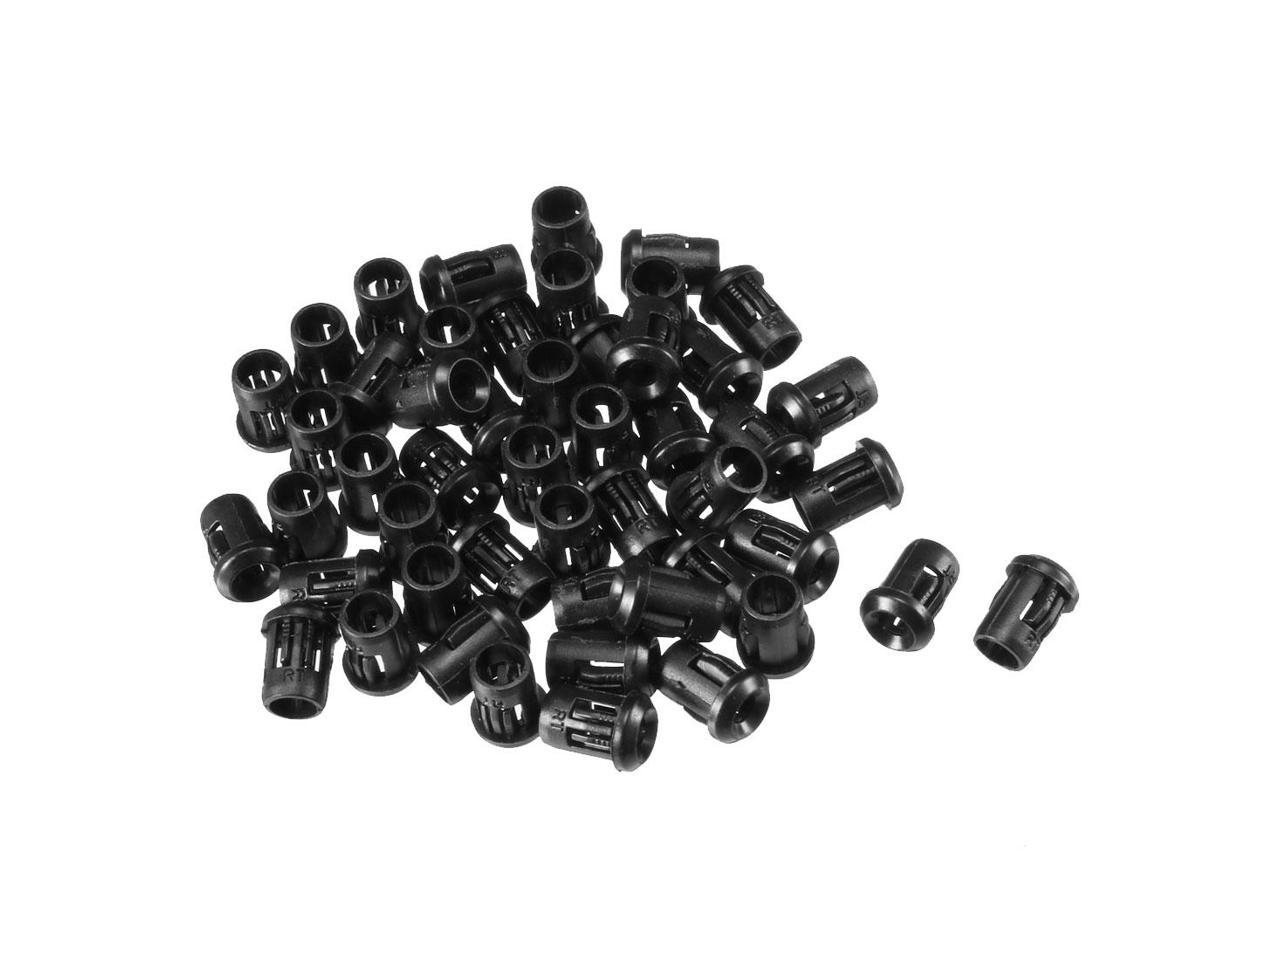 Sockets Taille : 3mm 50pcs LED Socket Support de diode en plastique Clip Black Bezel Mount Practical 